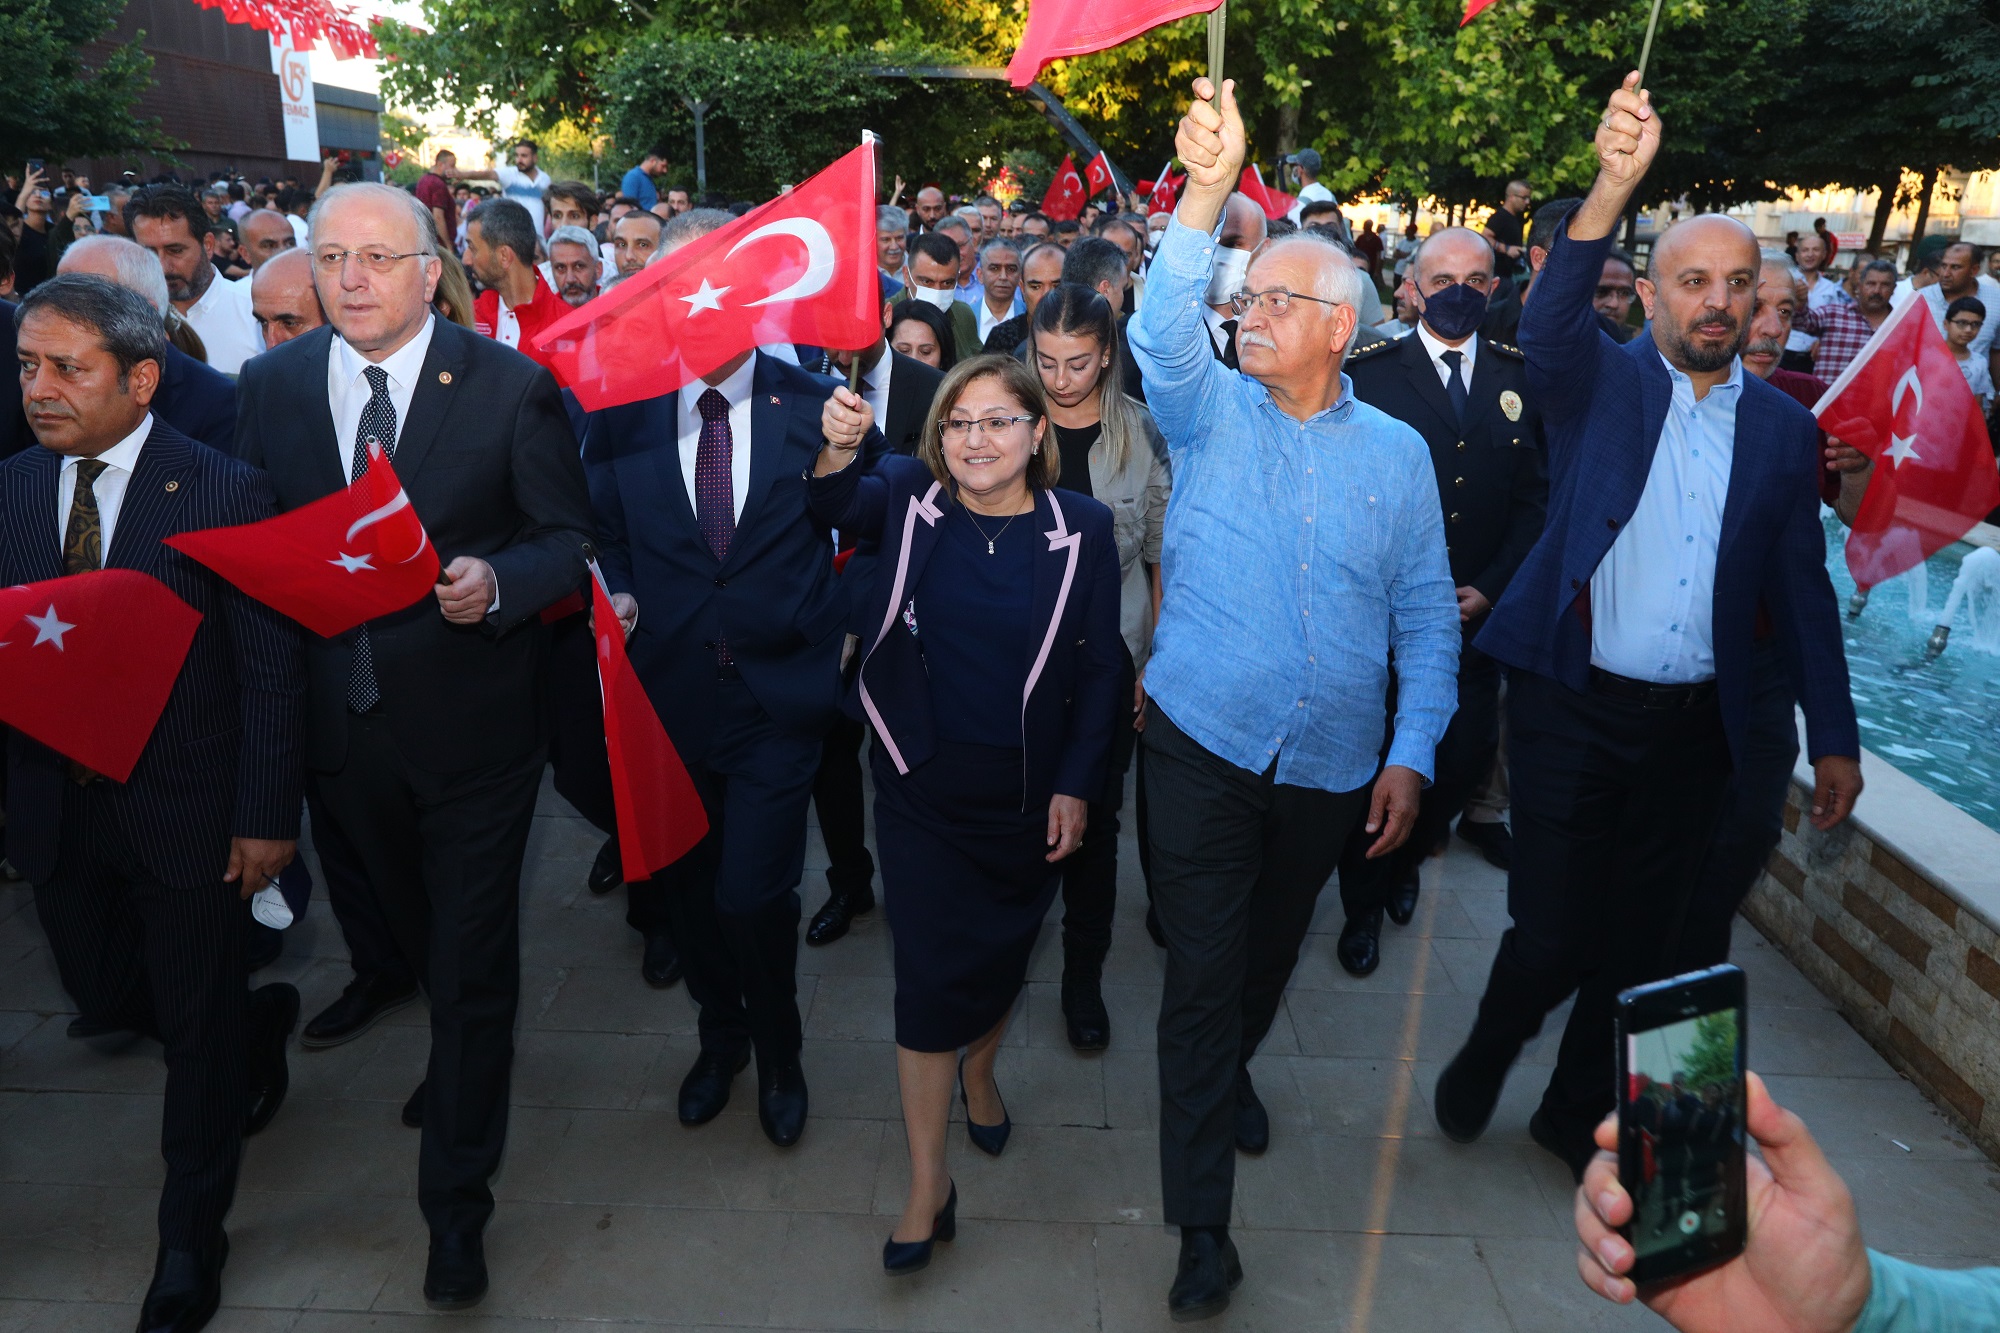 GAZİANTEP 15 TEMMUZ GECESİ YİNE TEK YÜREK, TEK BİLEK OLDU! (Video Haber- Halil Eyyupoğlu)